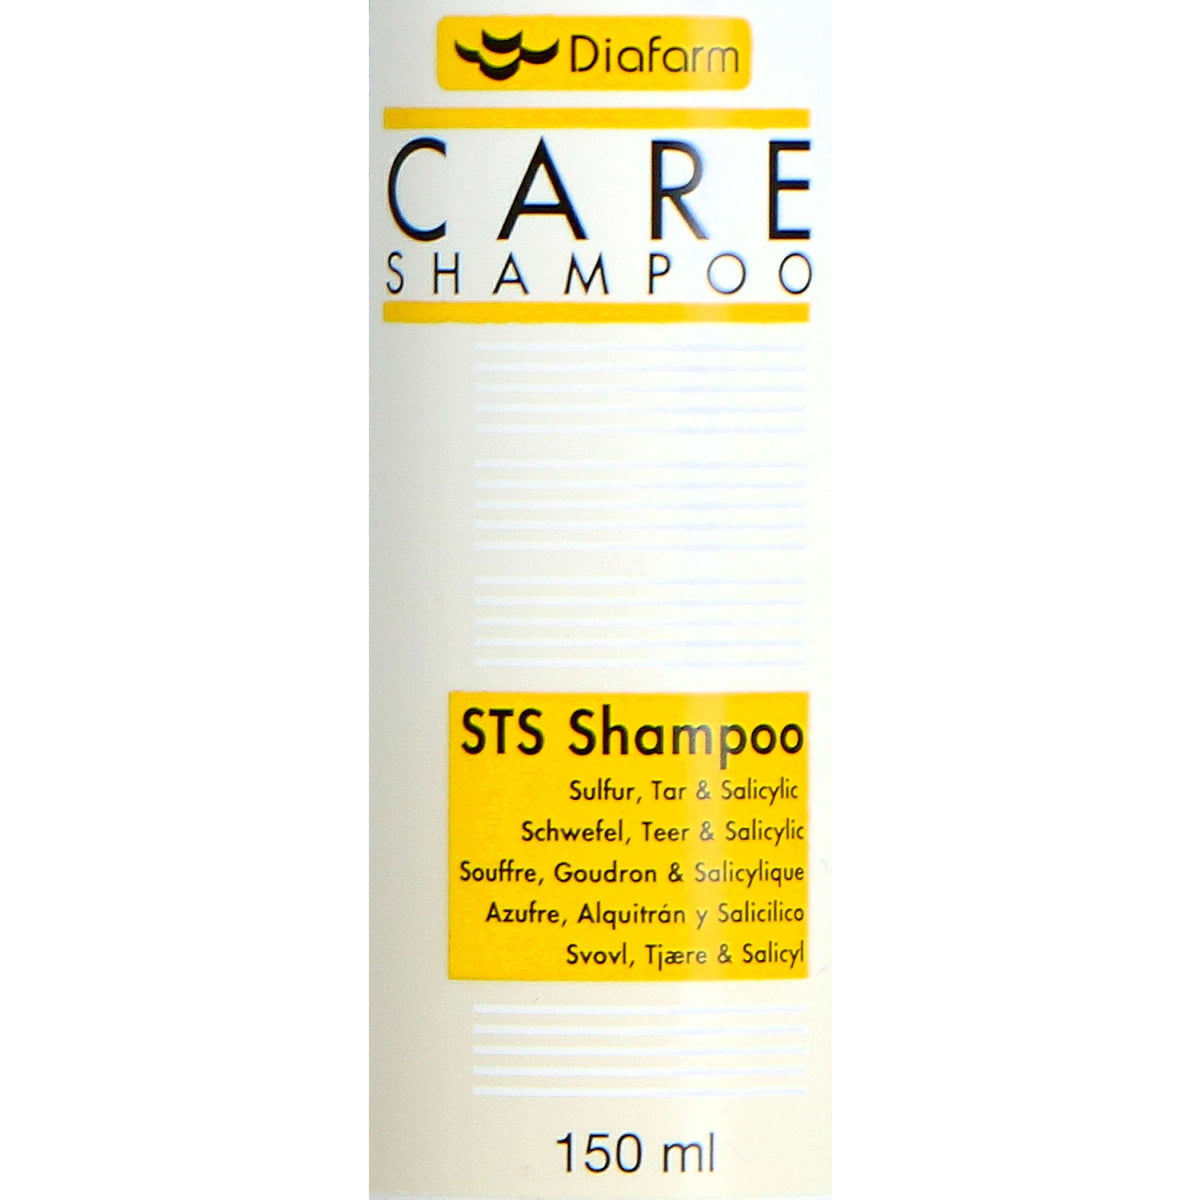 Diafarm Shampoo Schwefel, Teer & Salycilic Haustiere